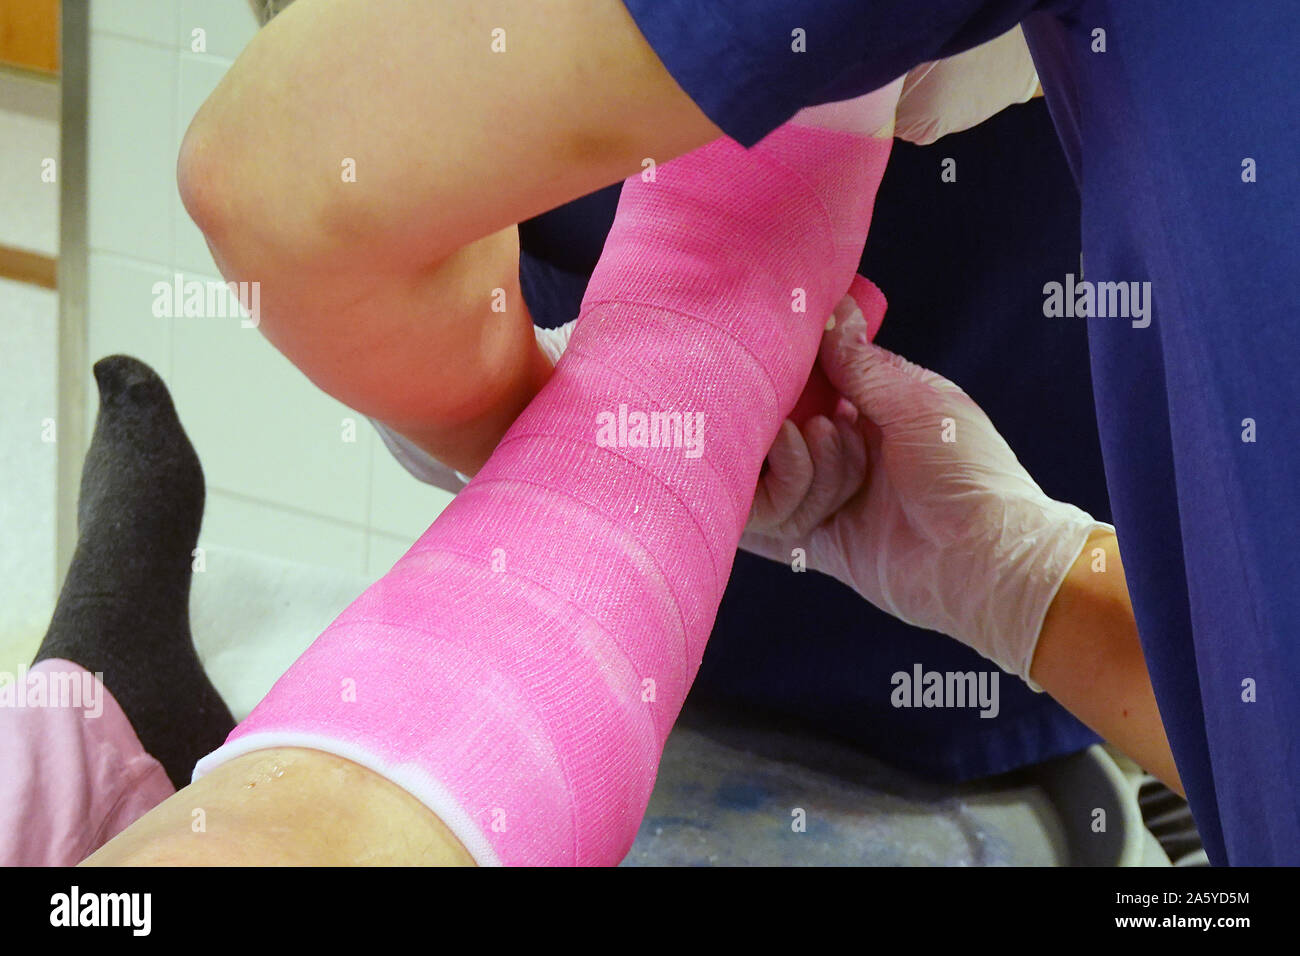 Yeso ortopédico. Fractura de tobillo enyesado médico del paciente utilizando rosa capa superior de fibra de vidrio. Foto de stock